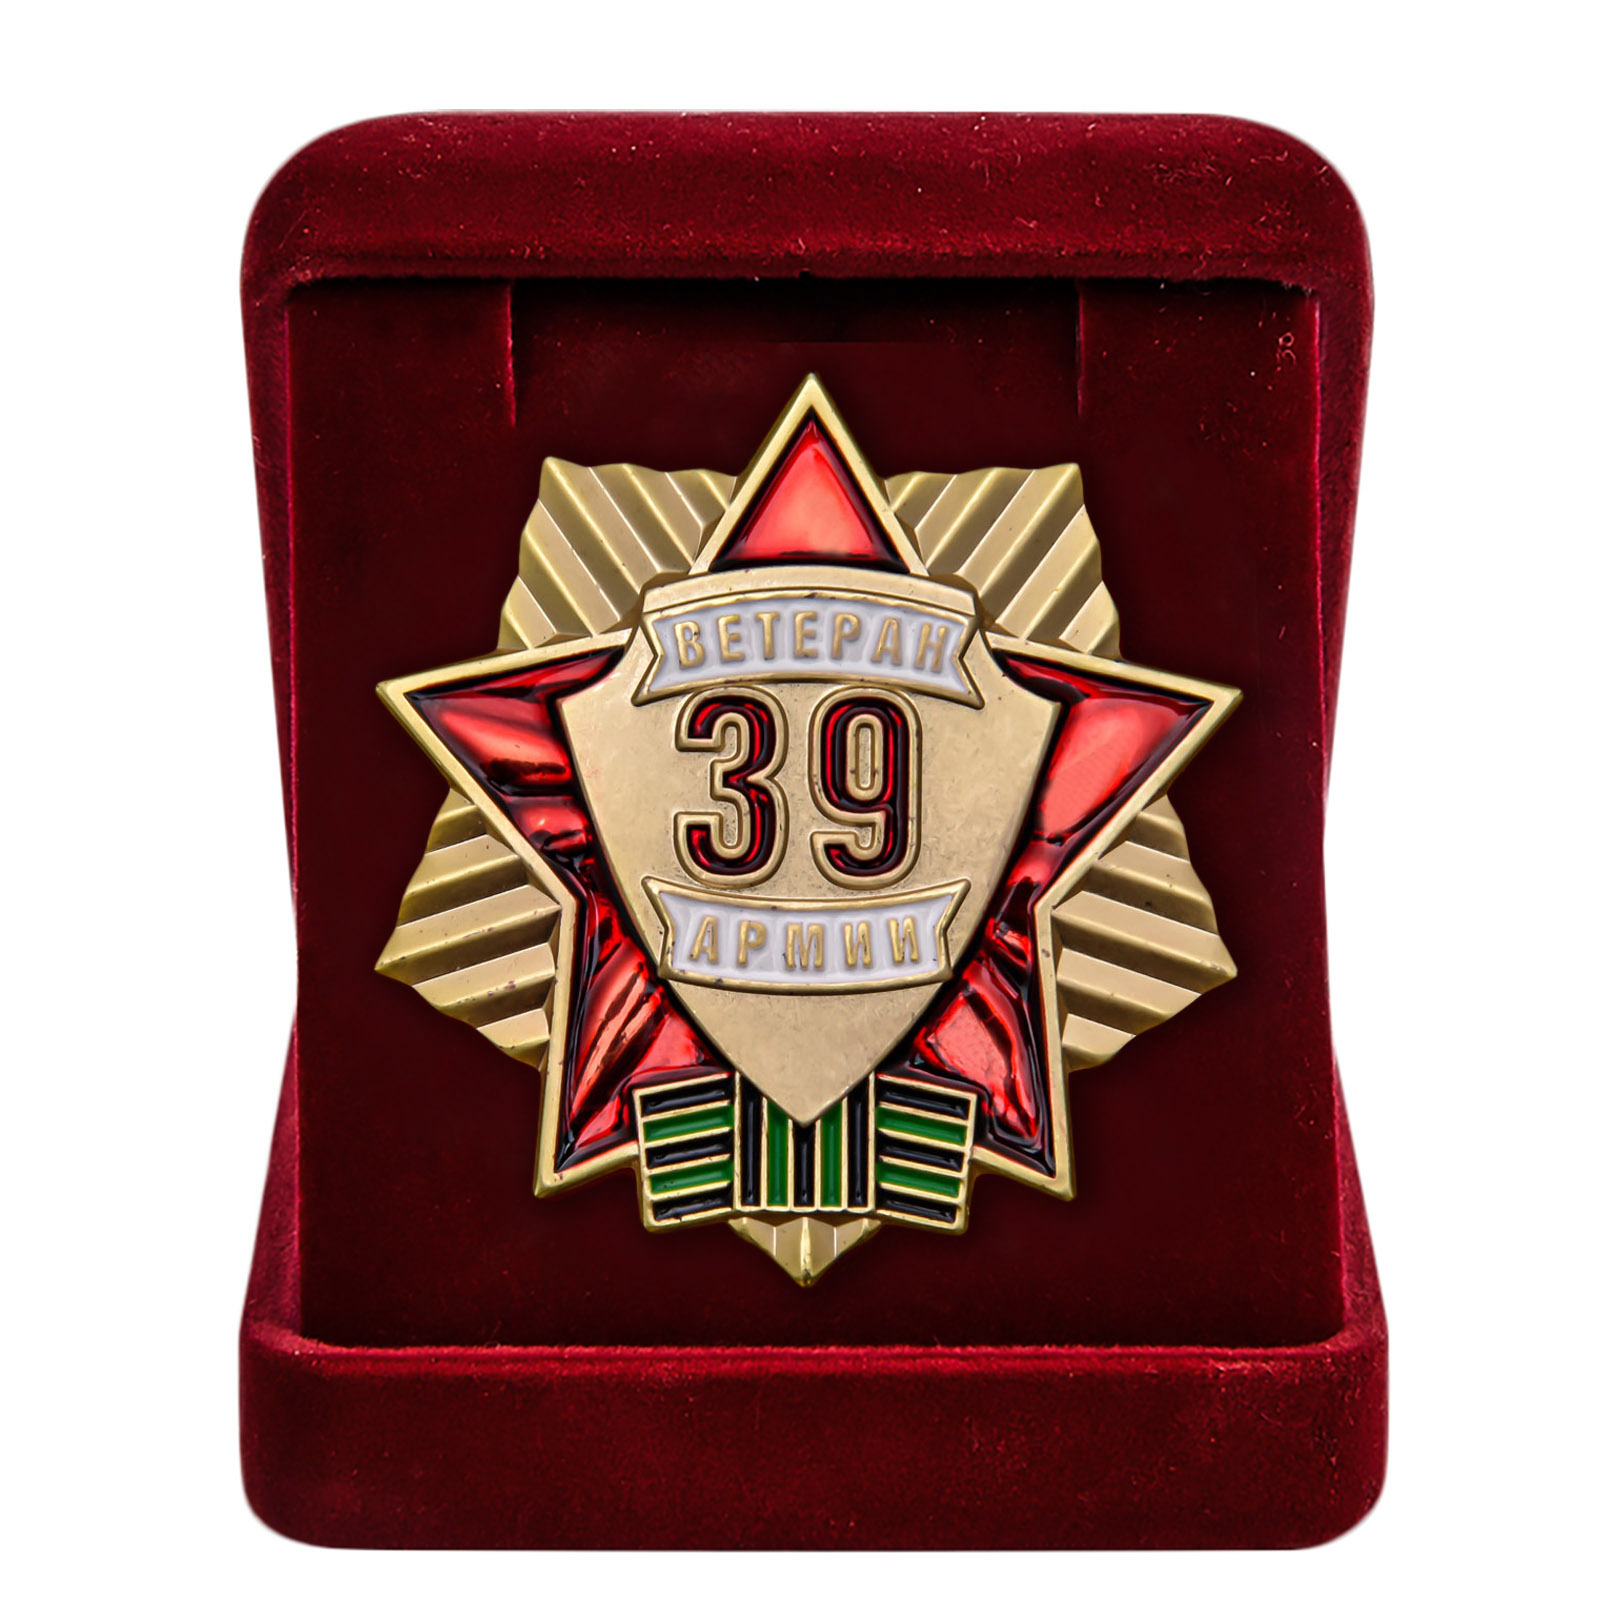 Купить знак Ветеран 39 Армии выгодно онлайн